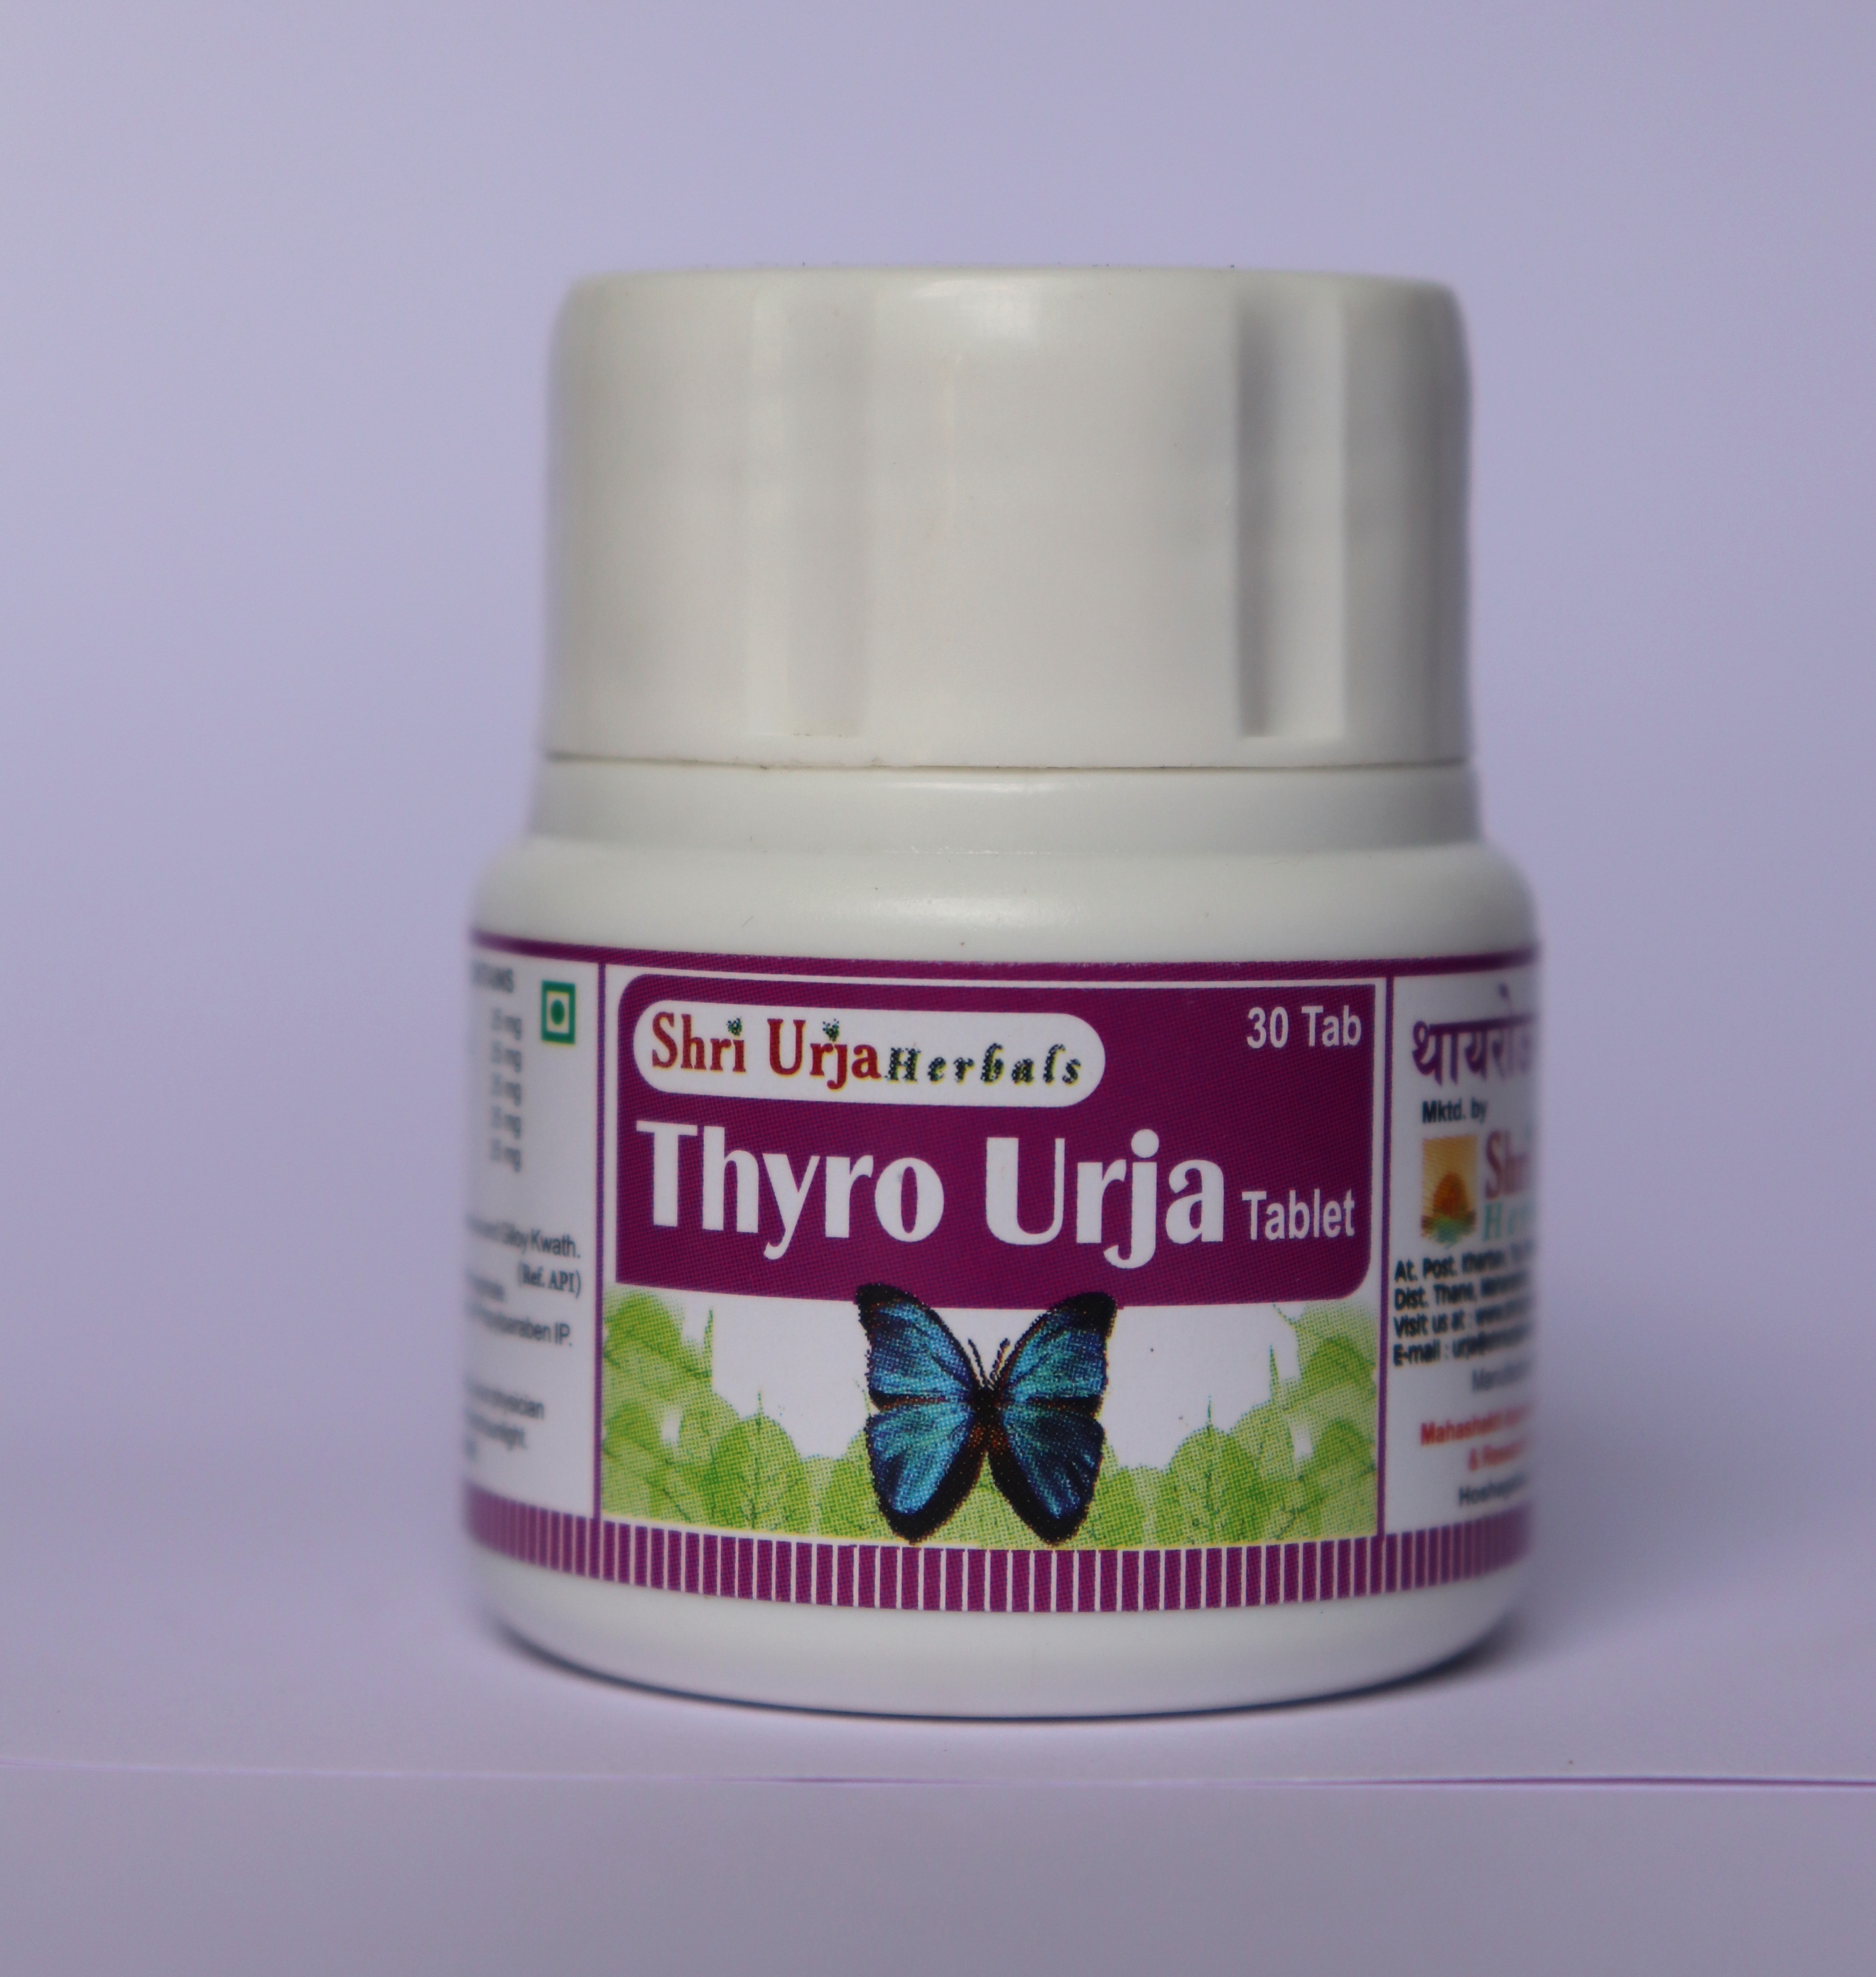 Buy Thyro Urja Tablet at Best Price Online